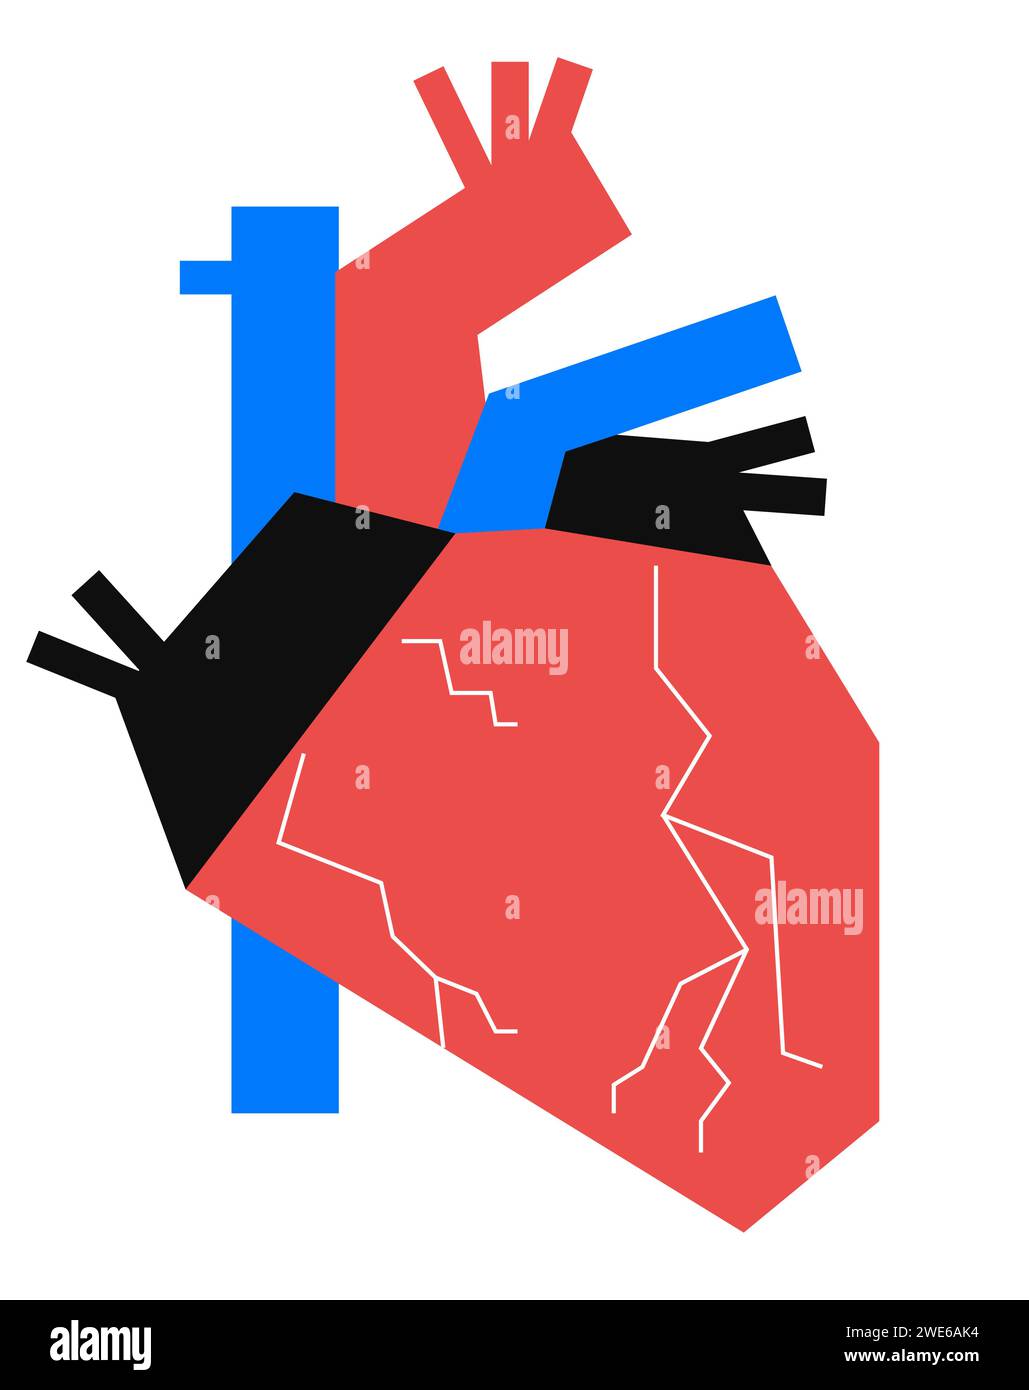 Conception de l'anatomie du coeur humain dans le style géométrique patchwork. Composition graphique pour publicité, bannière, design d'emballage. Illustration vectorielle Illustration de Vecteur